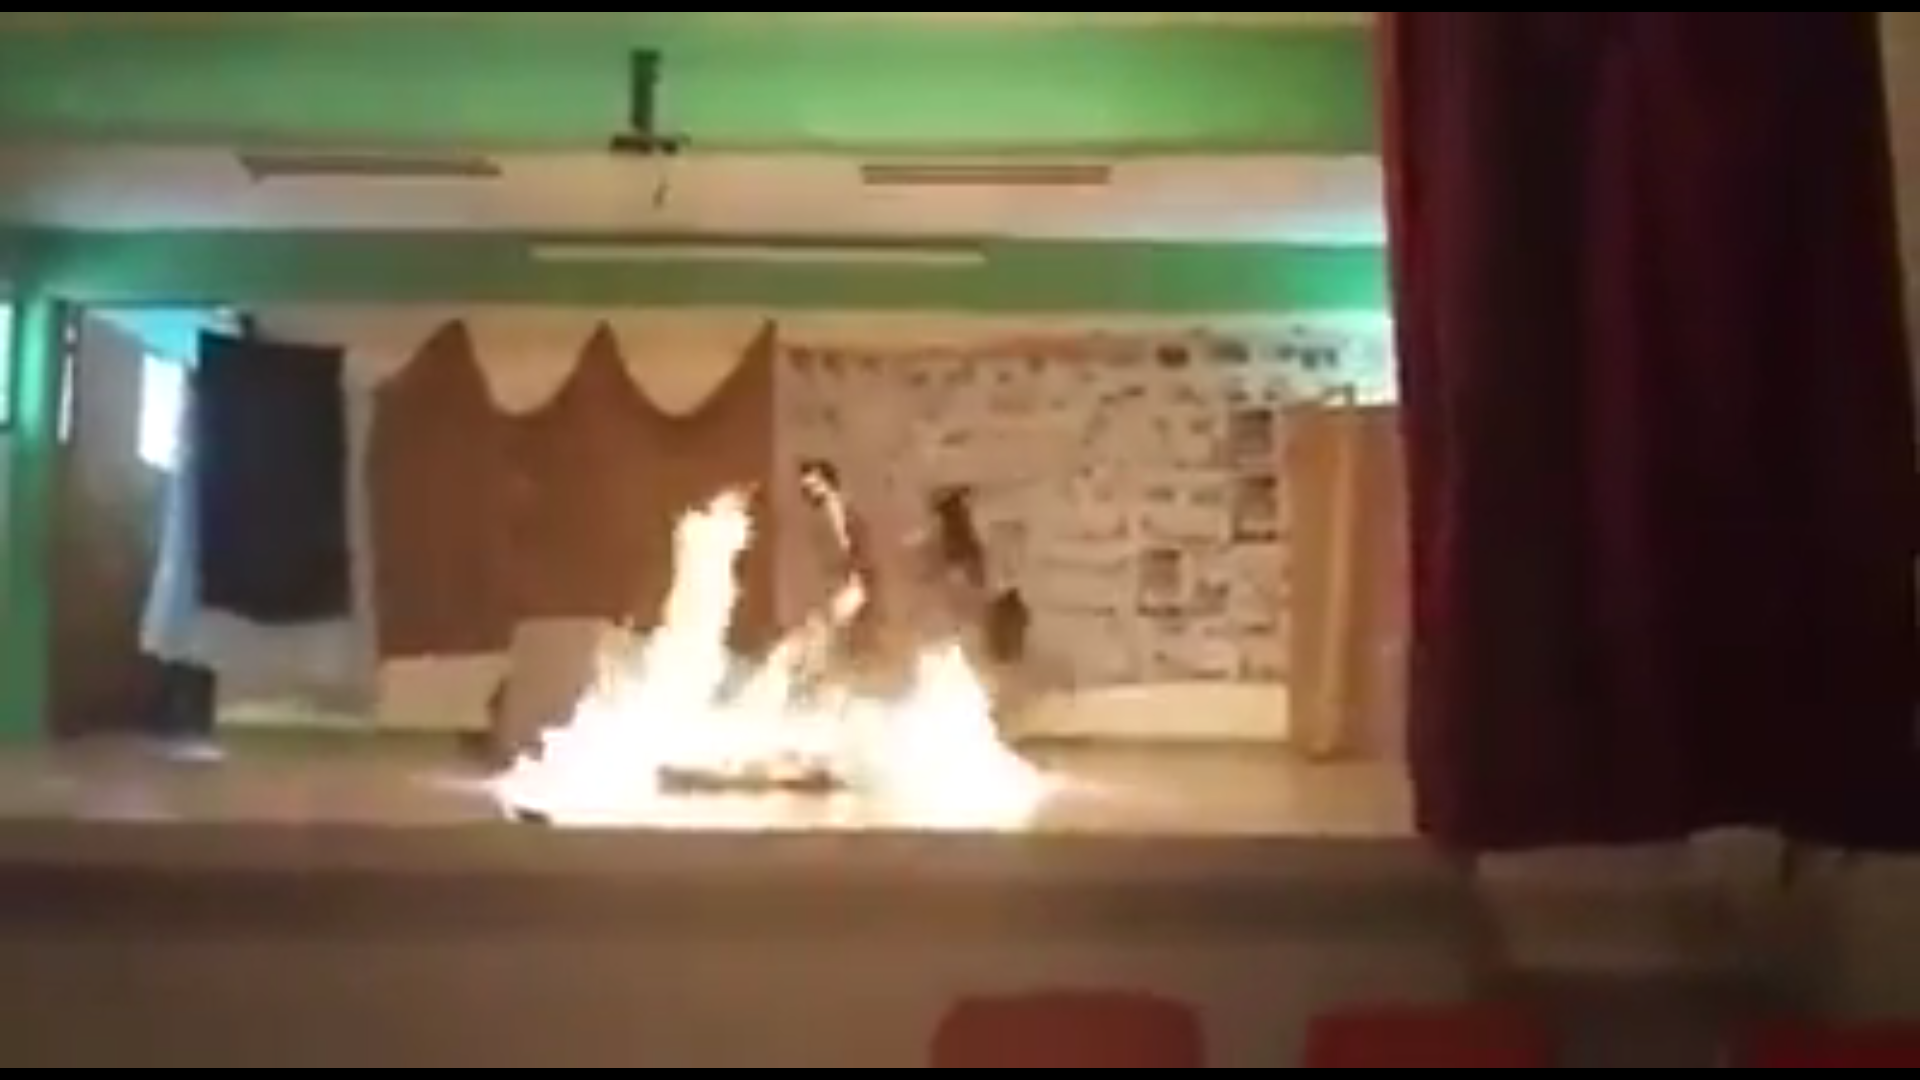  Estudiantes en Puebla sufren quemaduras en obra de teatro; padres acusan a profesor de negligencia